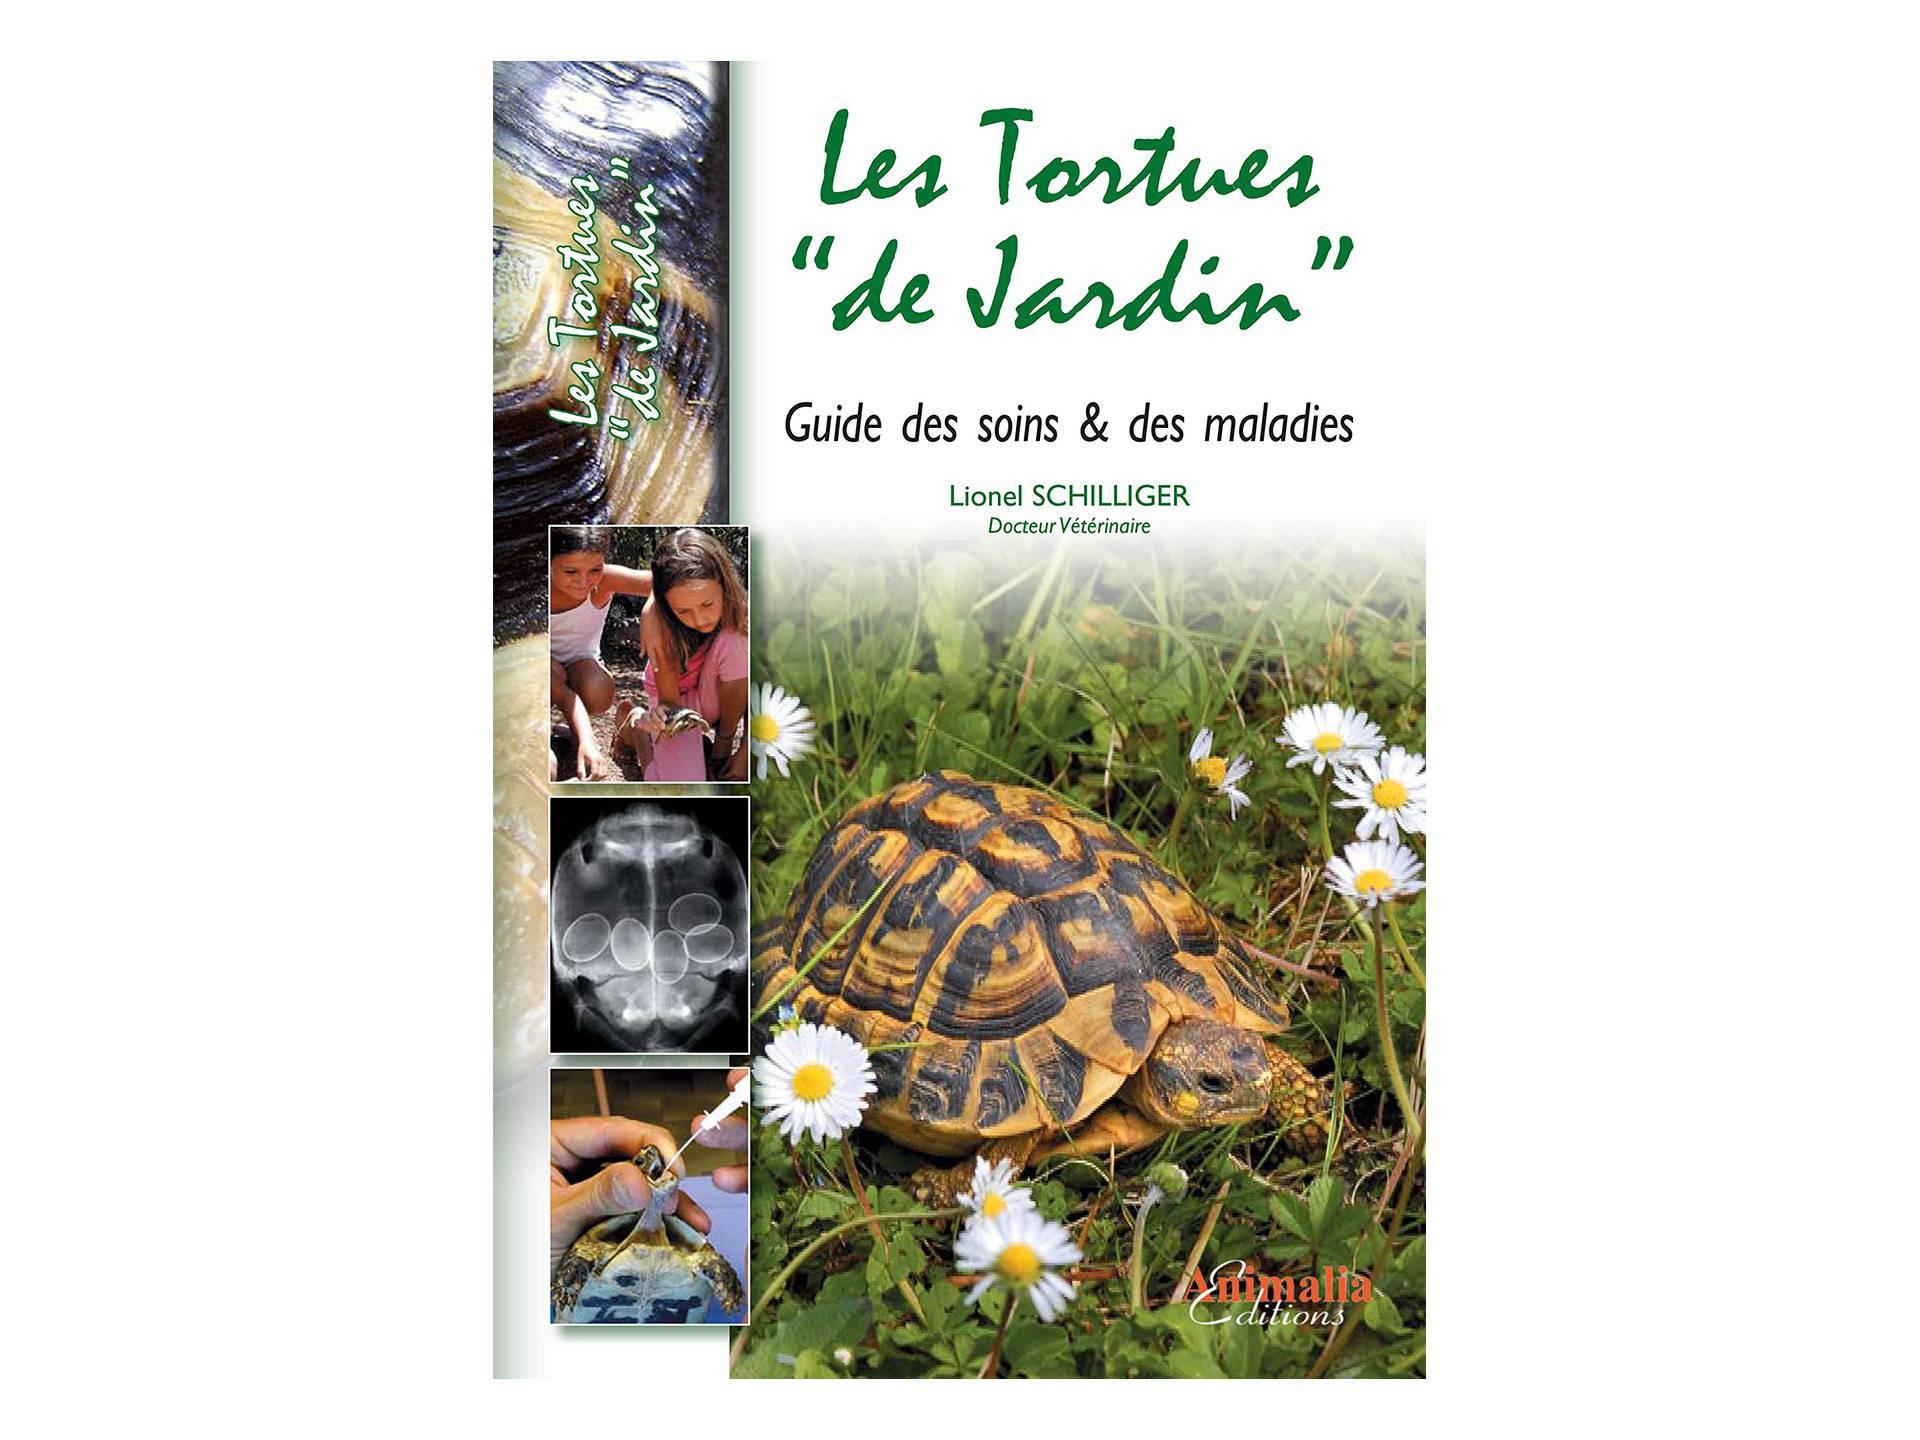 Livre Les tortues de jardin Soins et Maladies Lionel Schilliger sixième